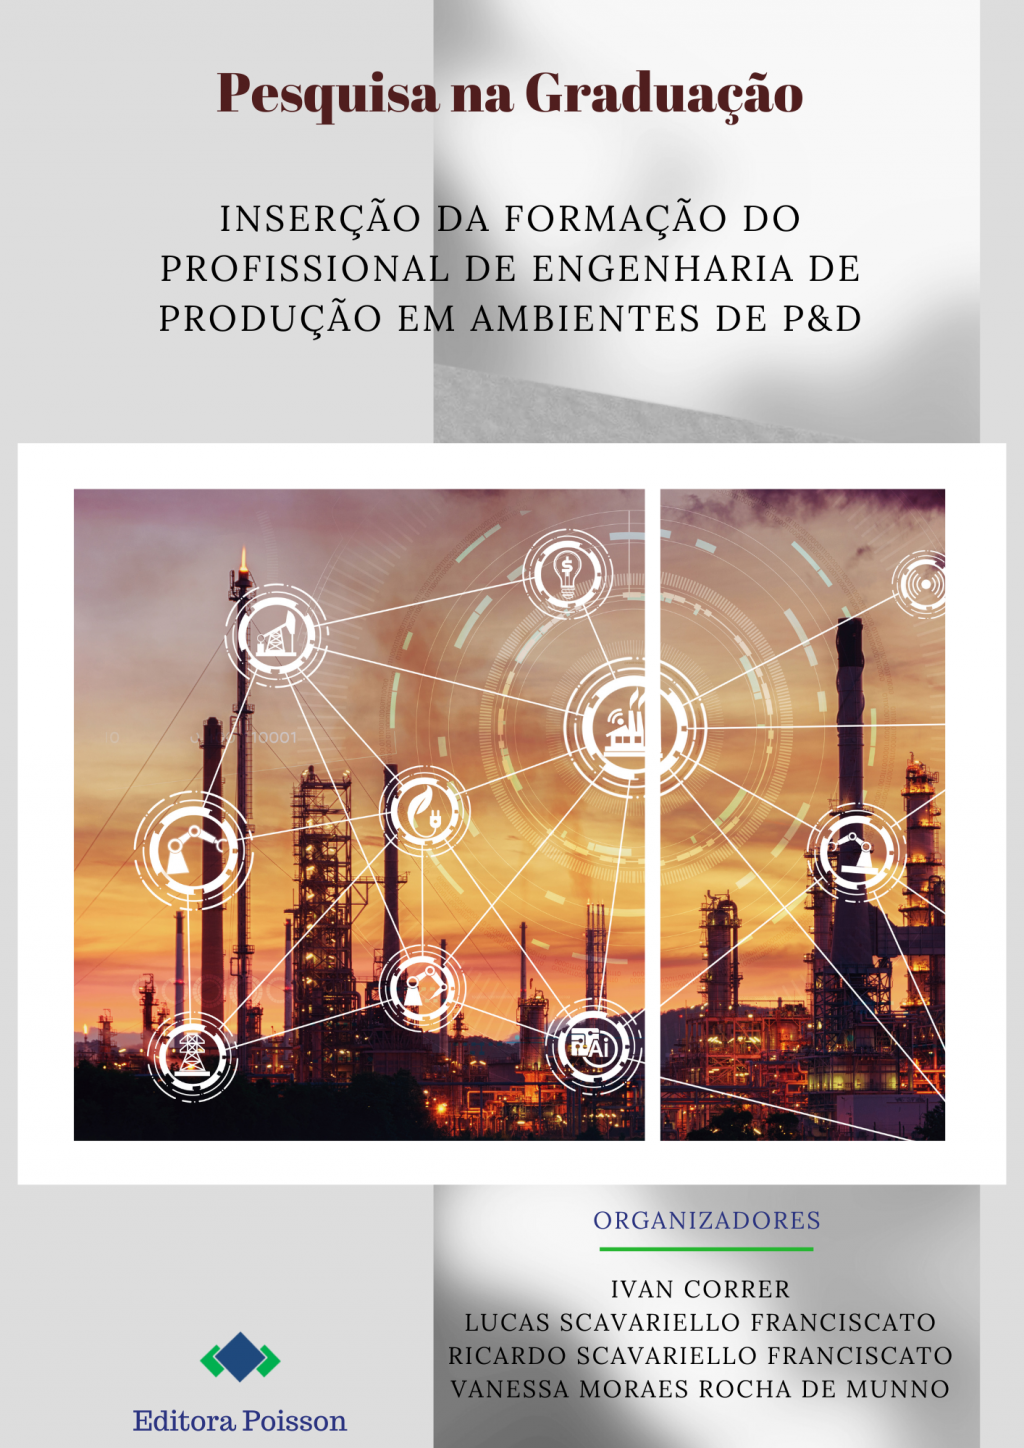 Pesquisa na Graduação: Inserção da formação do profissional de engenharia de produção em ambiente de P&D